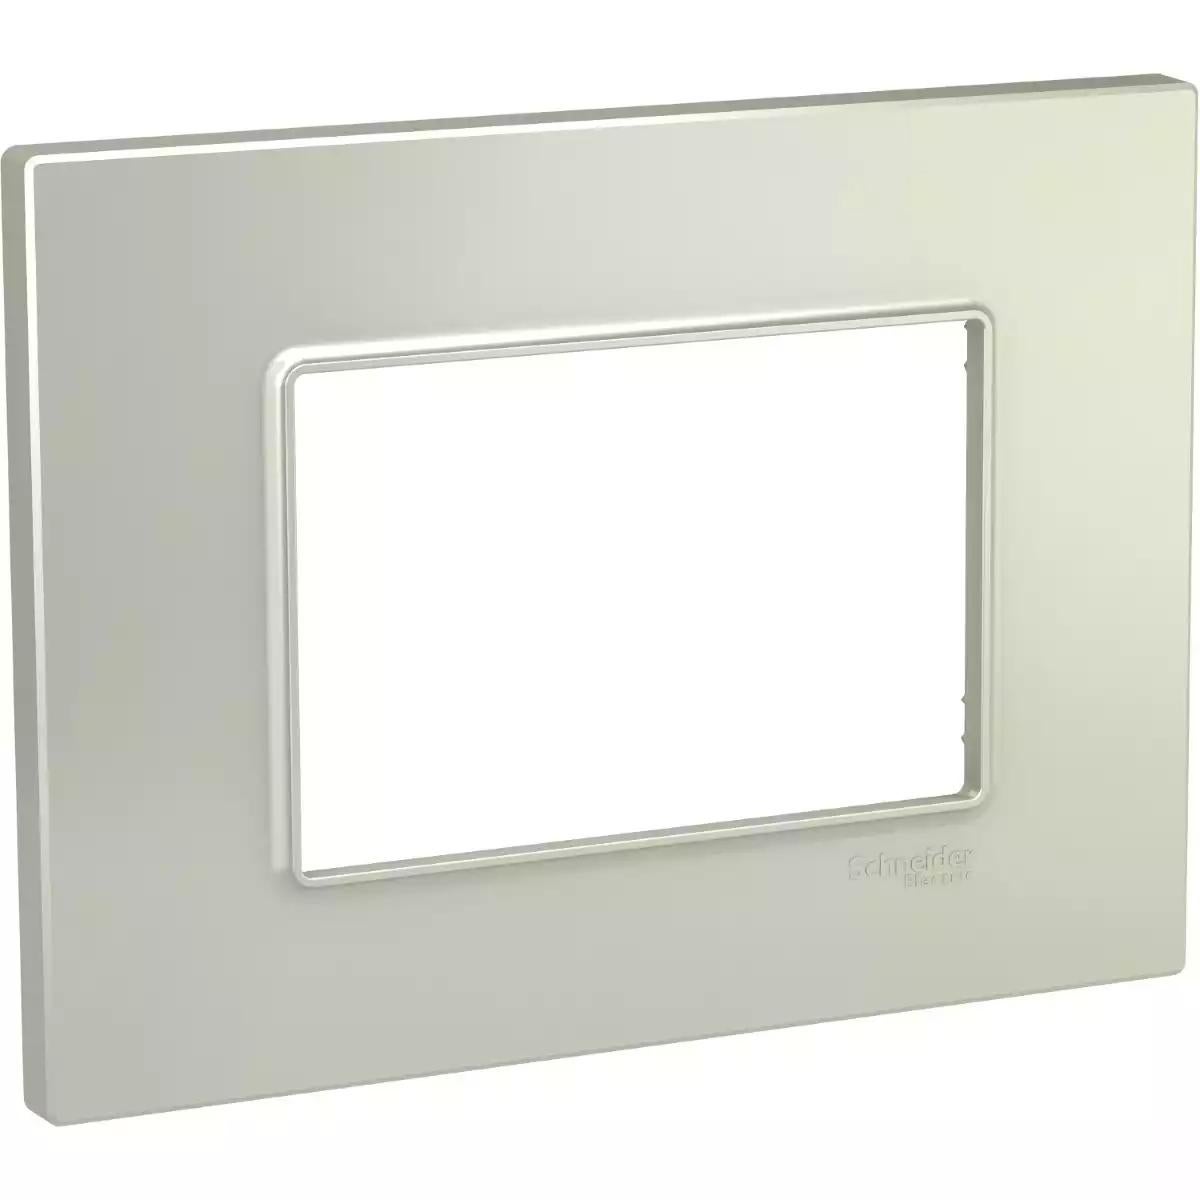 Unica Quadro - cover frame - 3 modules - titanium